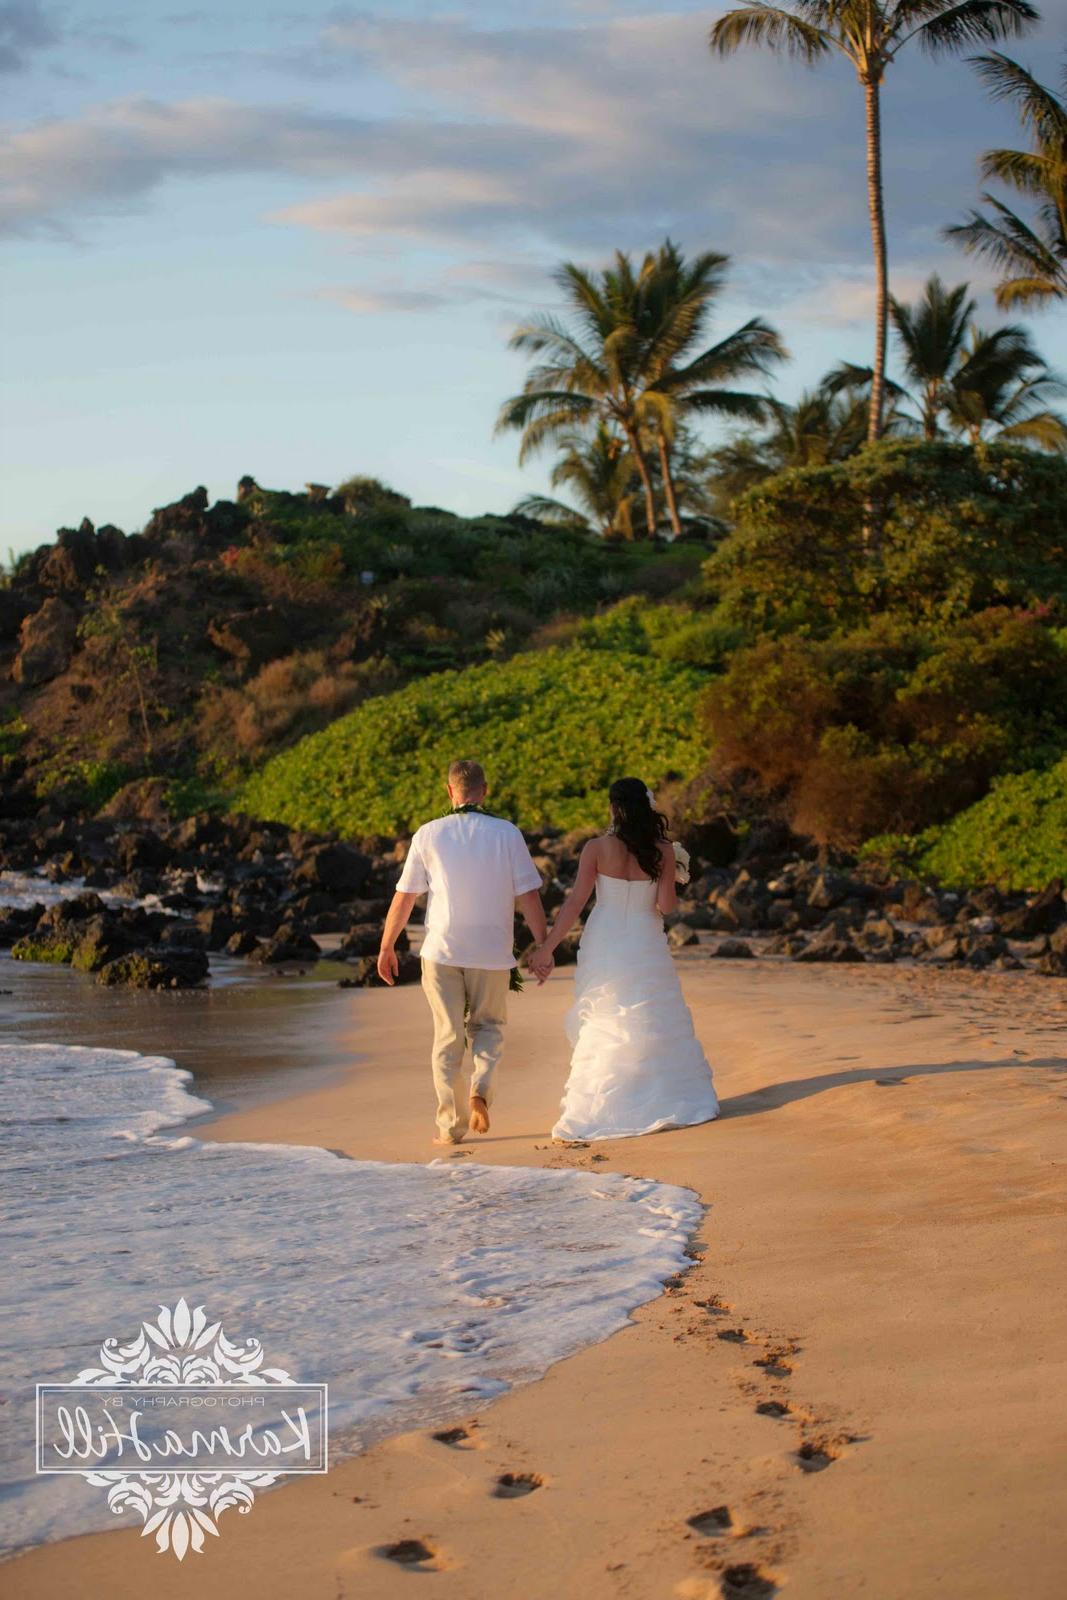 A dreamy beach wedding - Mark